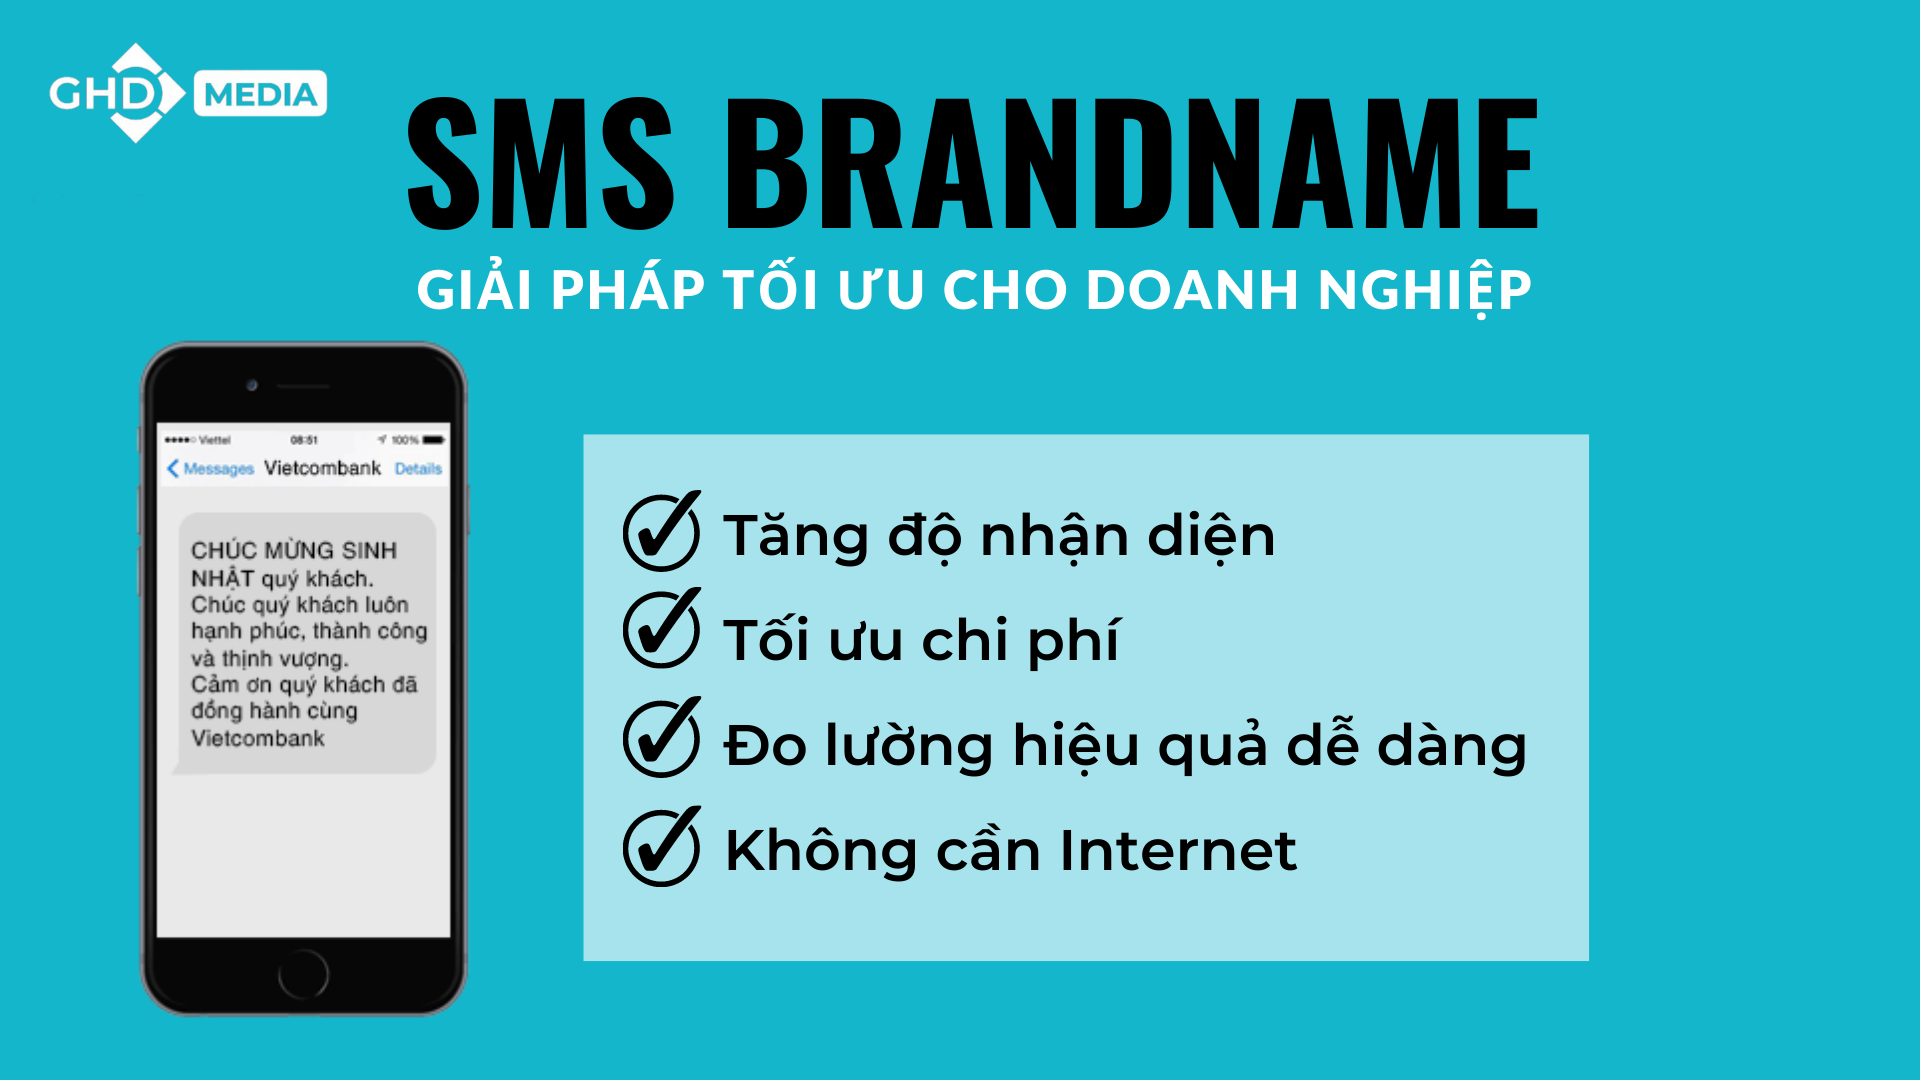 06 cách để tối ưu chiến dịch SMS Brandname hiệu quả mà bạn không nên bỏ lỡ